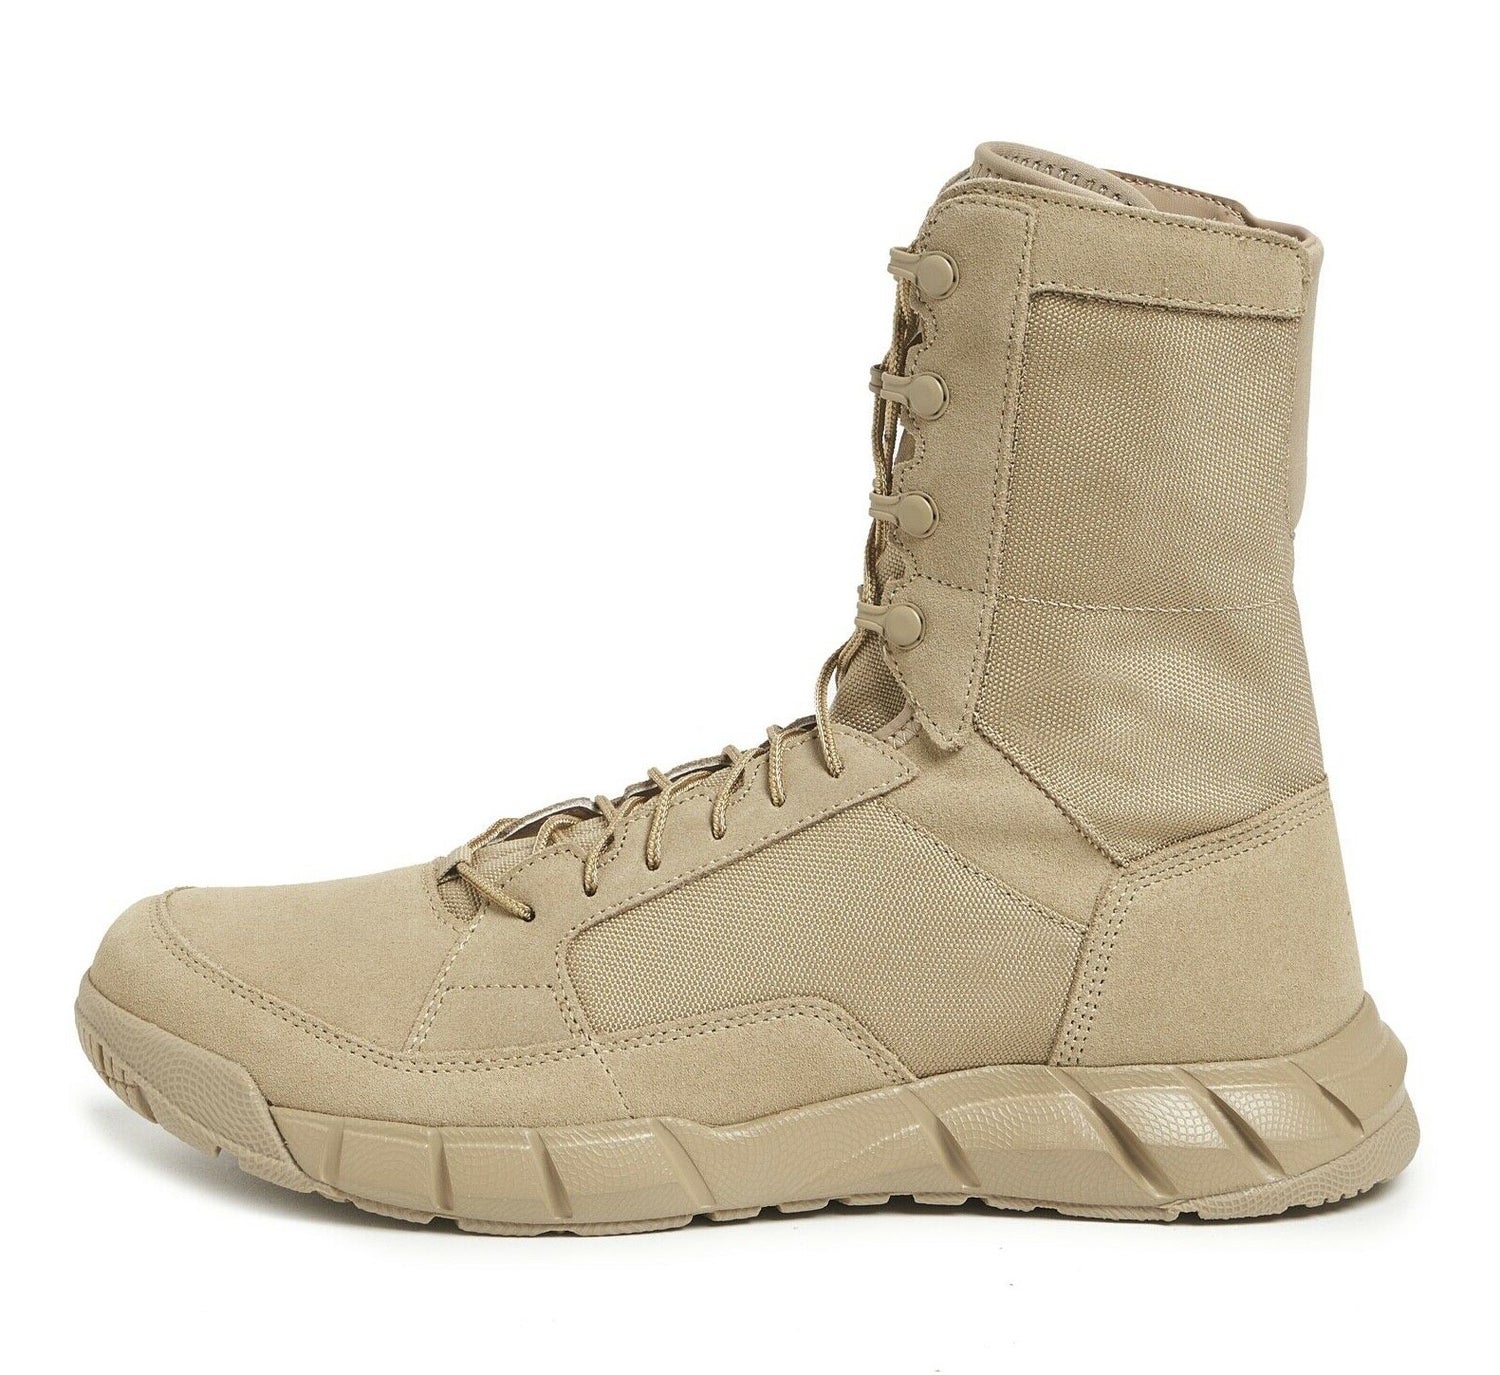 OAKLEY LIGHT ASSAULT 2 Desert Tan Boots 11188-889 – Combat Footwear